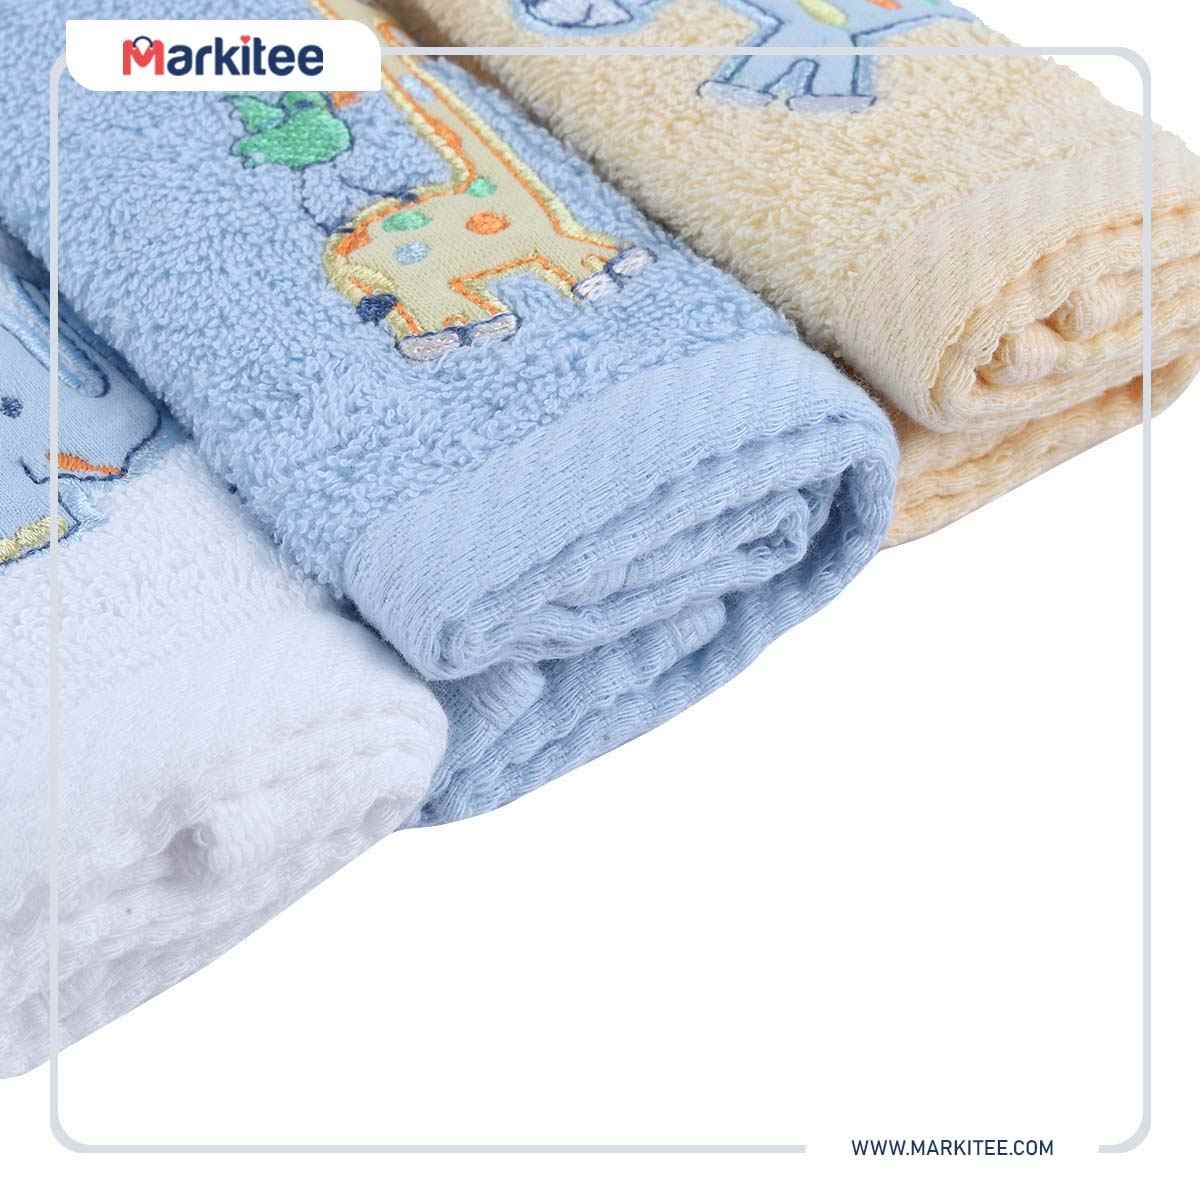 Babies bath towel set ...-NL-1012-DYWB